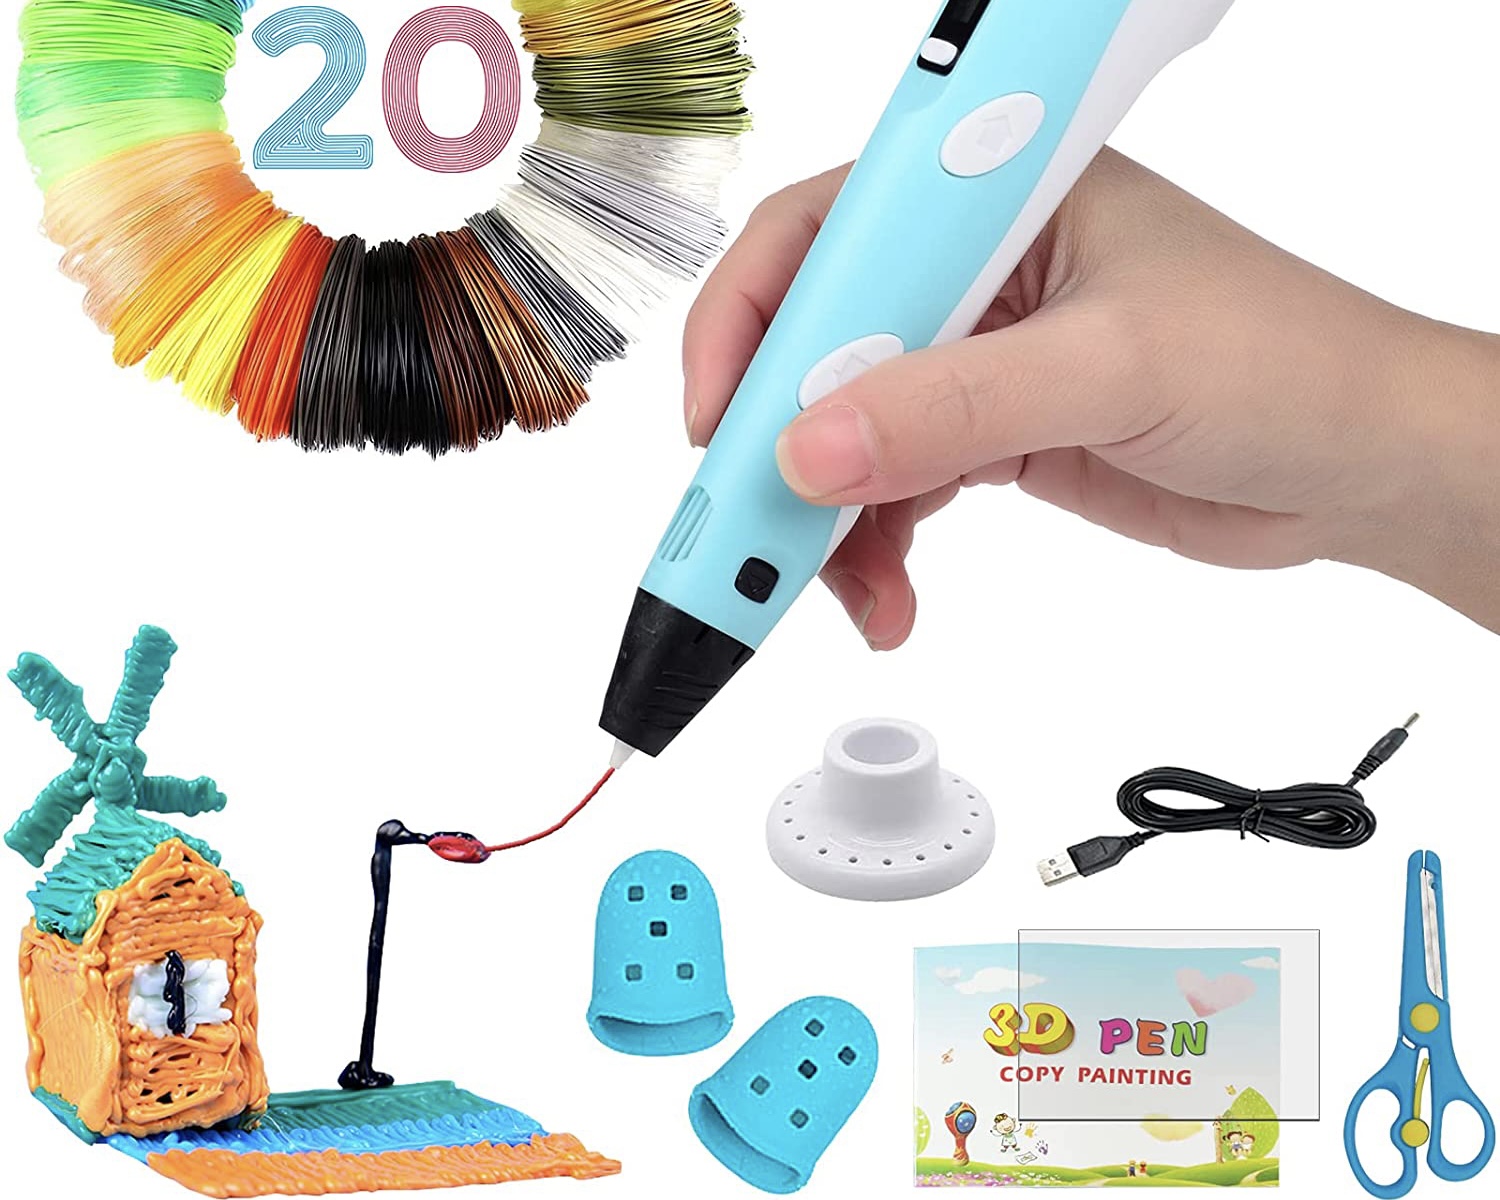 Penna 3D, un'idea regalo per creativi - Regali per tutti